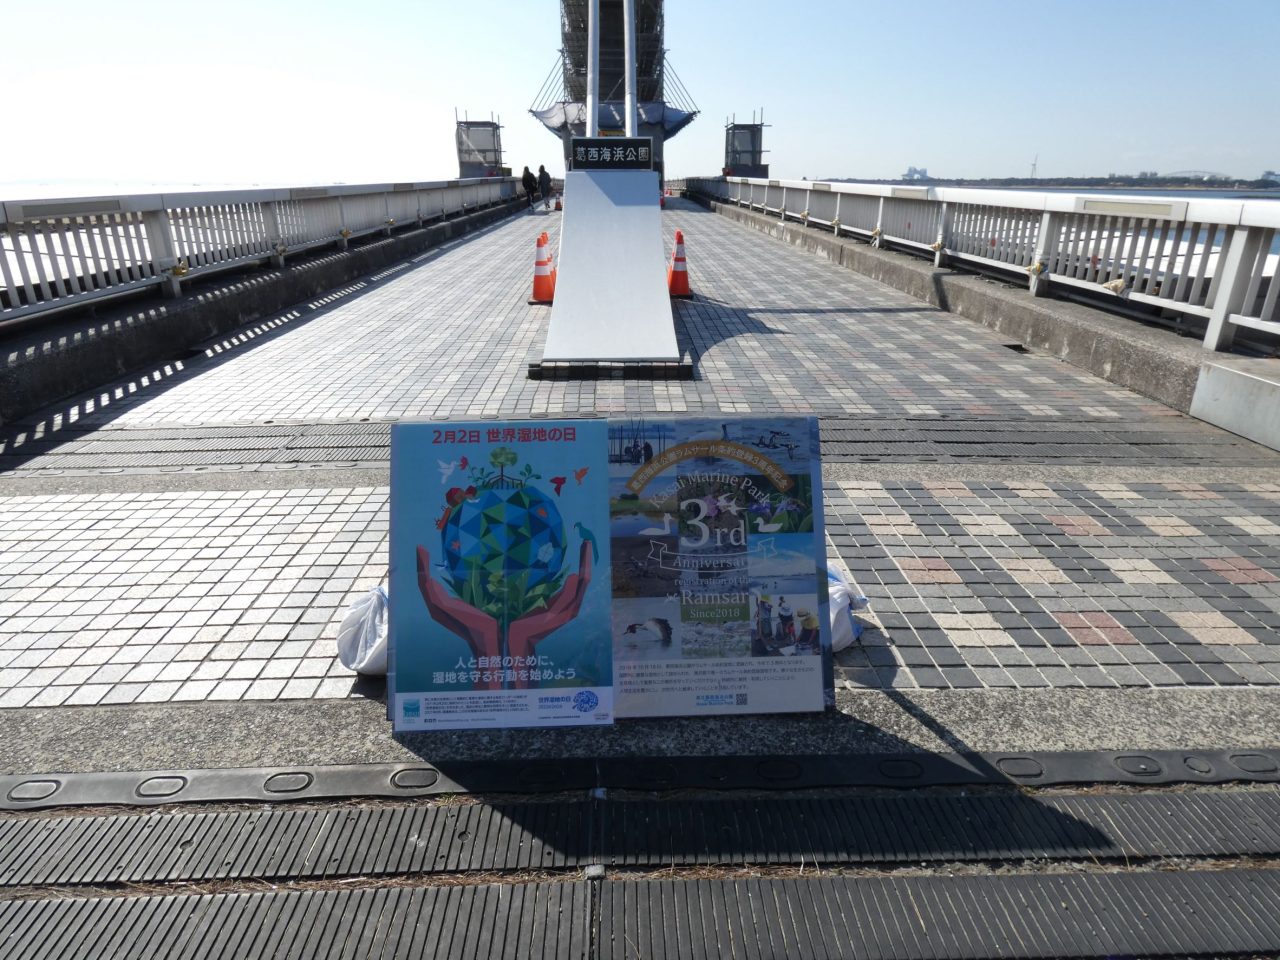 葛西海浜公園渚橋入口
ポスター2枚
2月2日世界湿地の日
葛西海浜公園ラムサール条約登録3周年